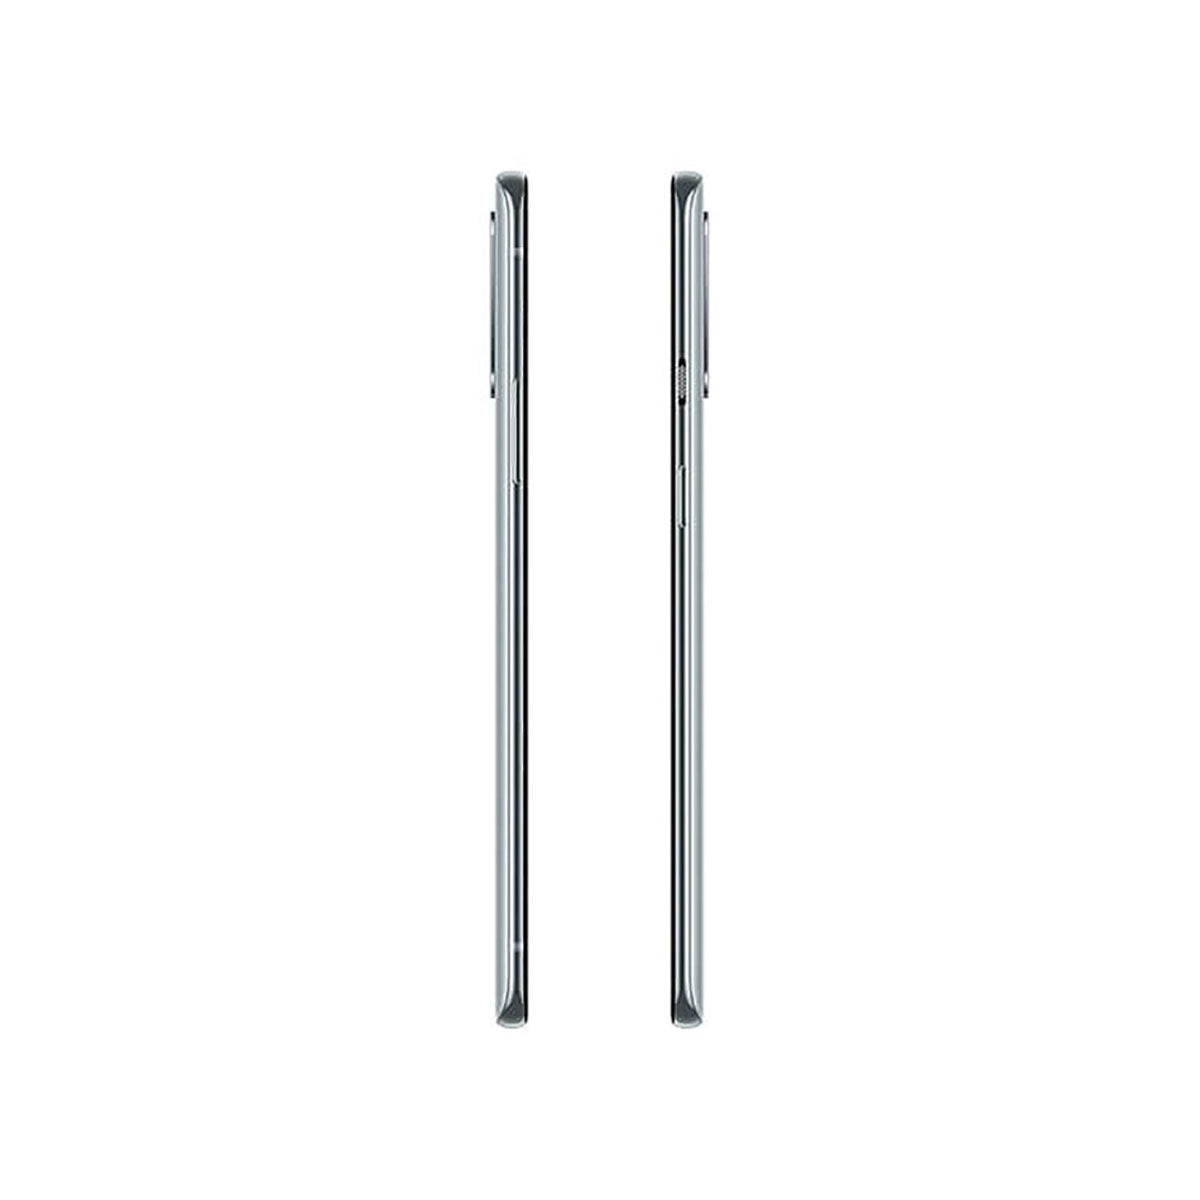 OnePlus 8T 5G 8GB/128GB Silver (Lunar Silver) Dual SIM